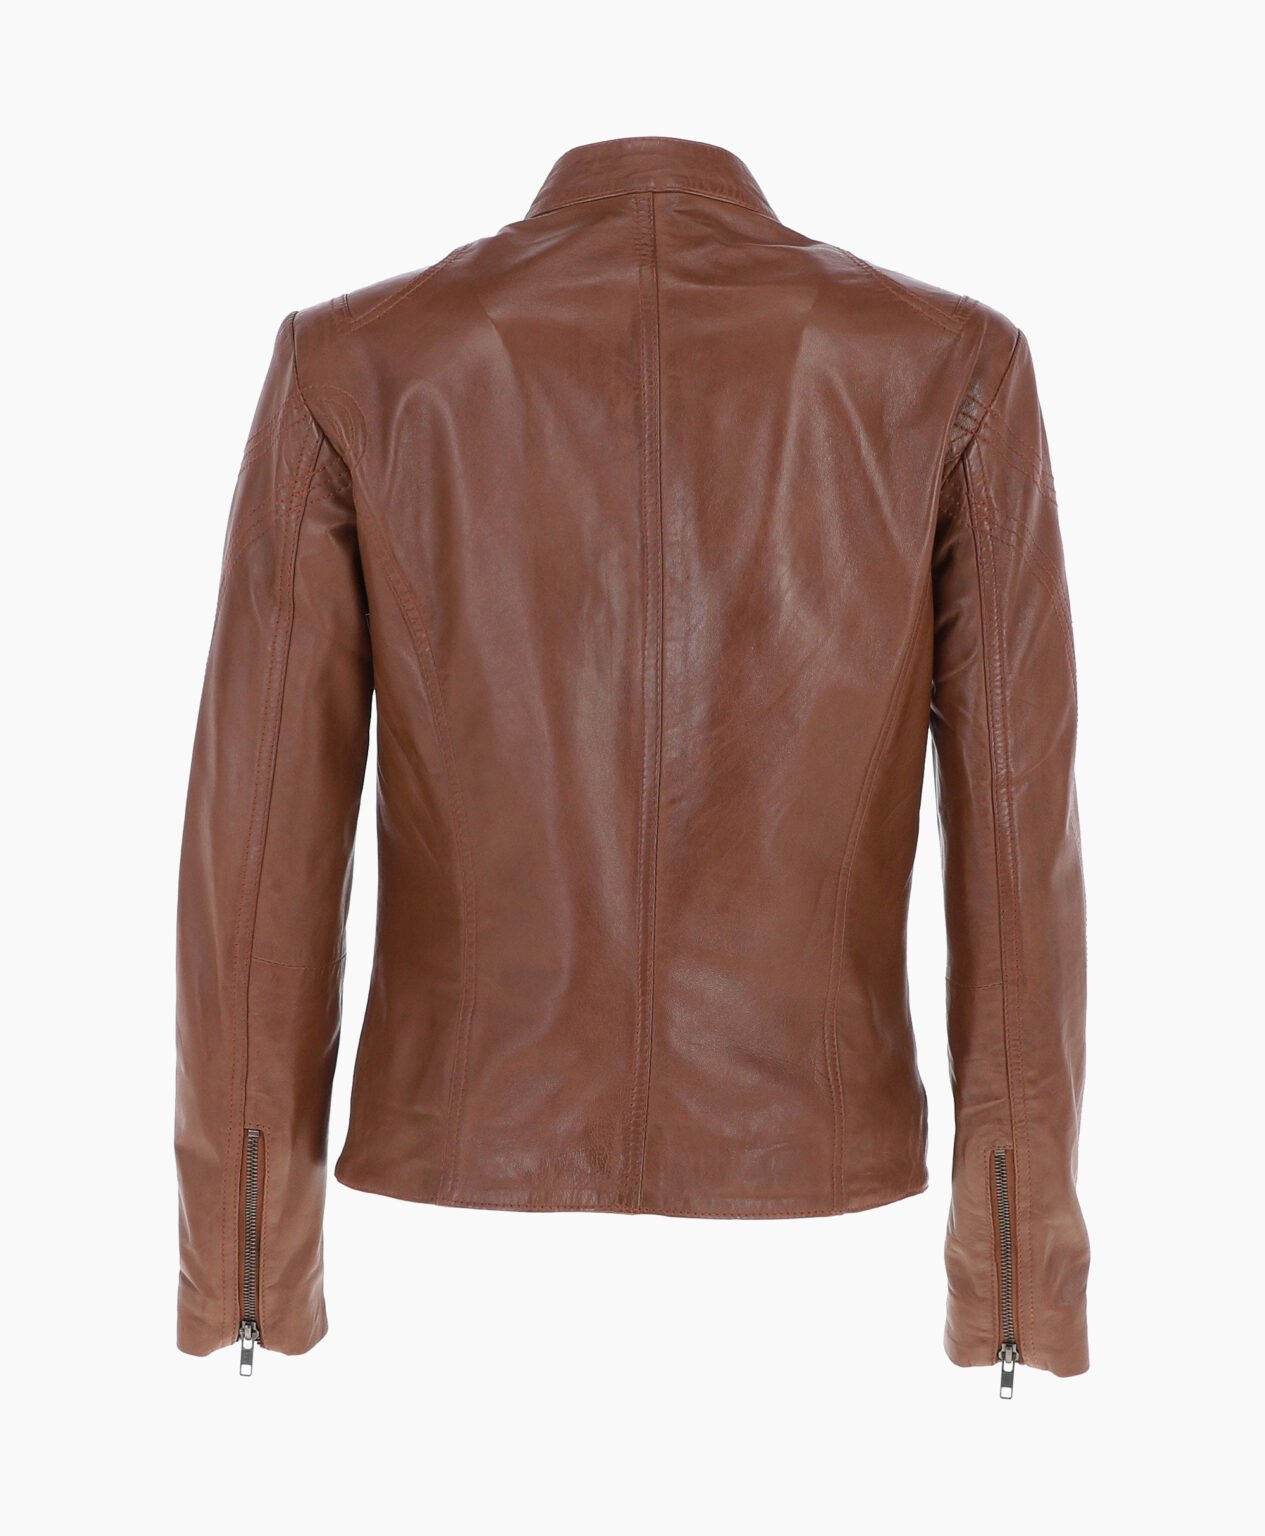 vogue-jacket-leather-biker-jacket-brown-alton-image202